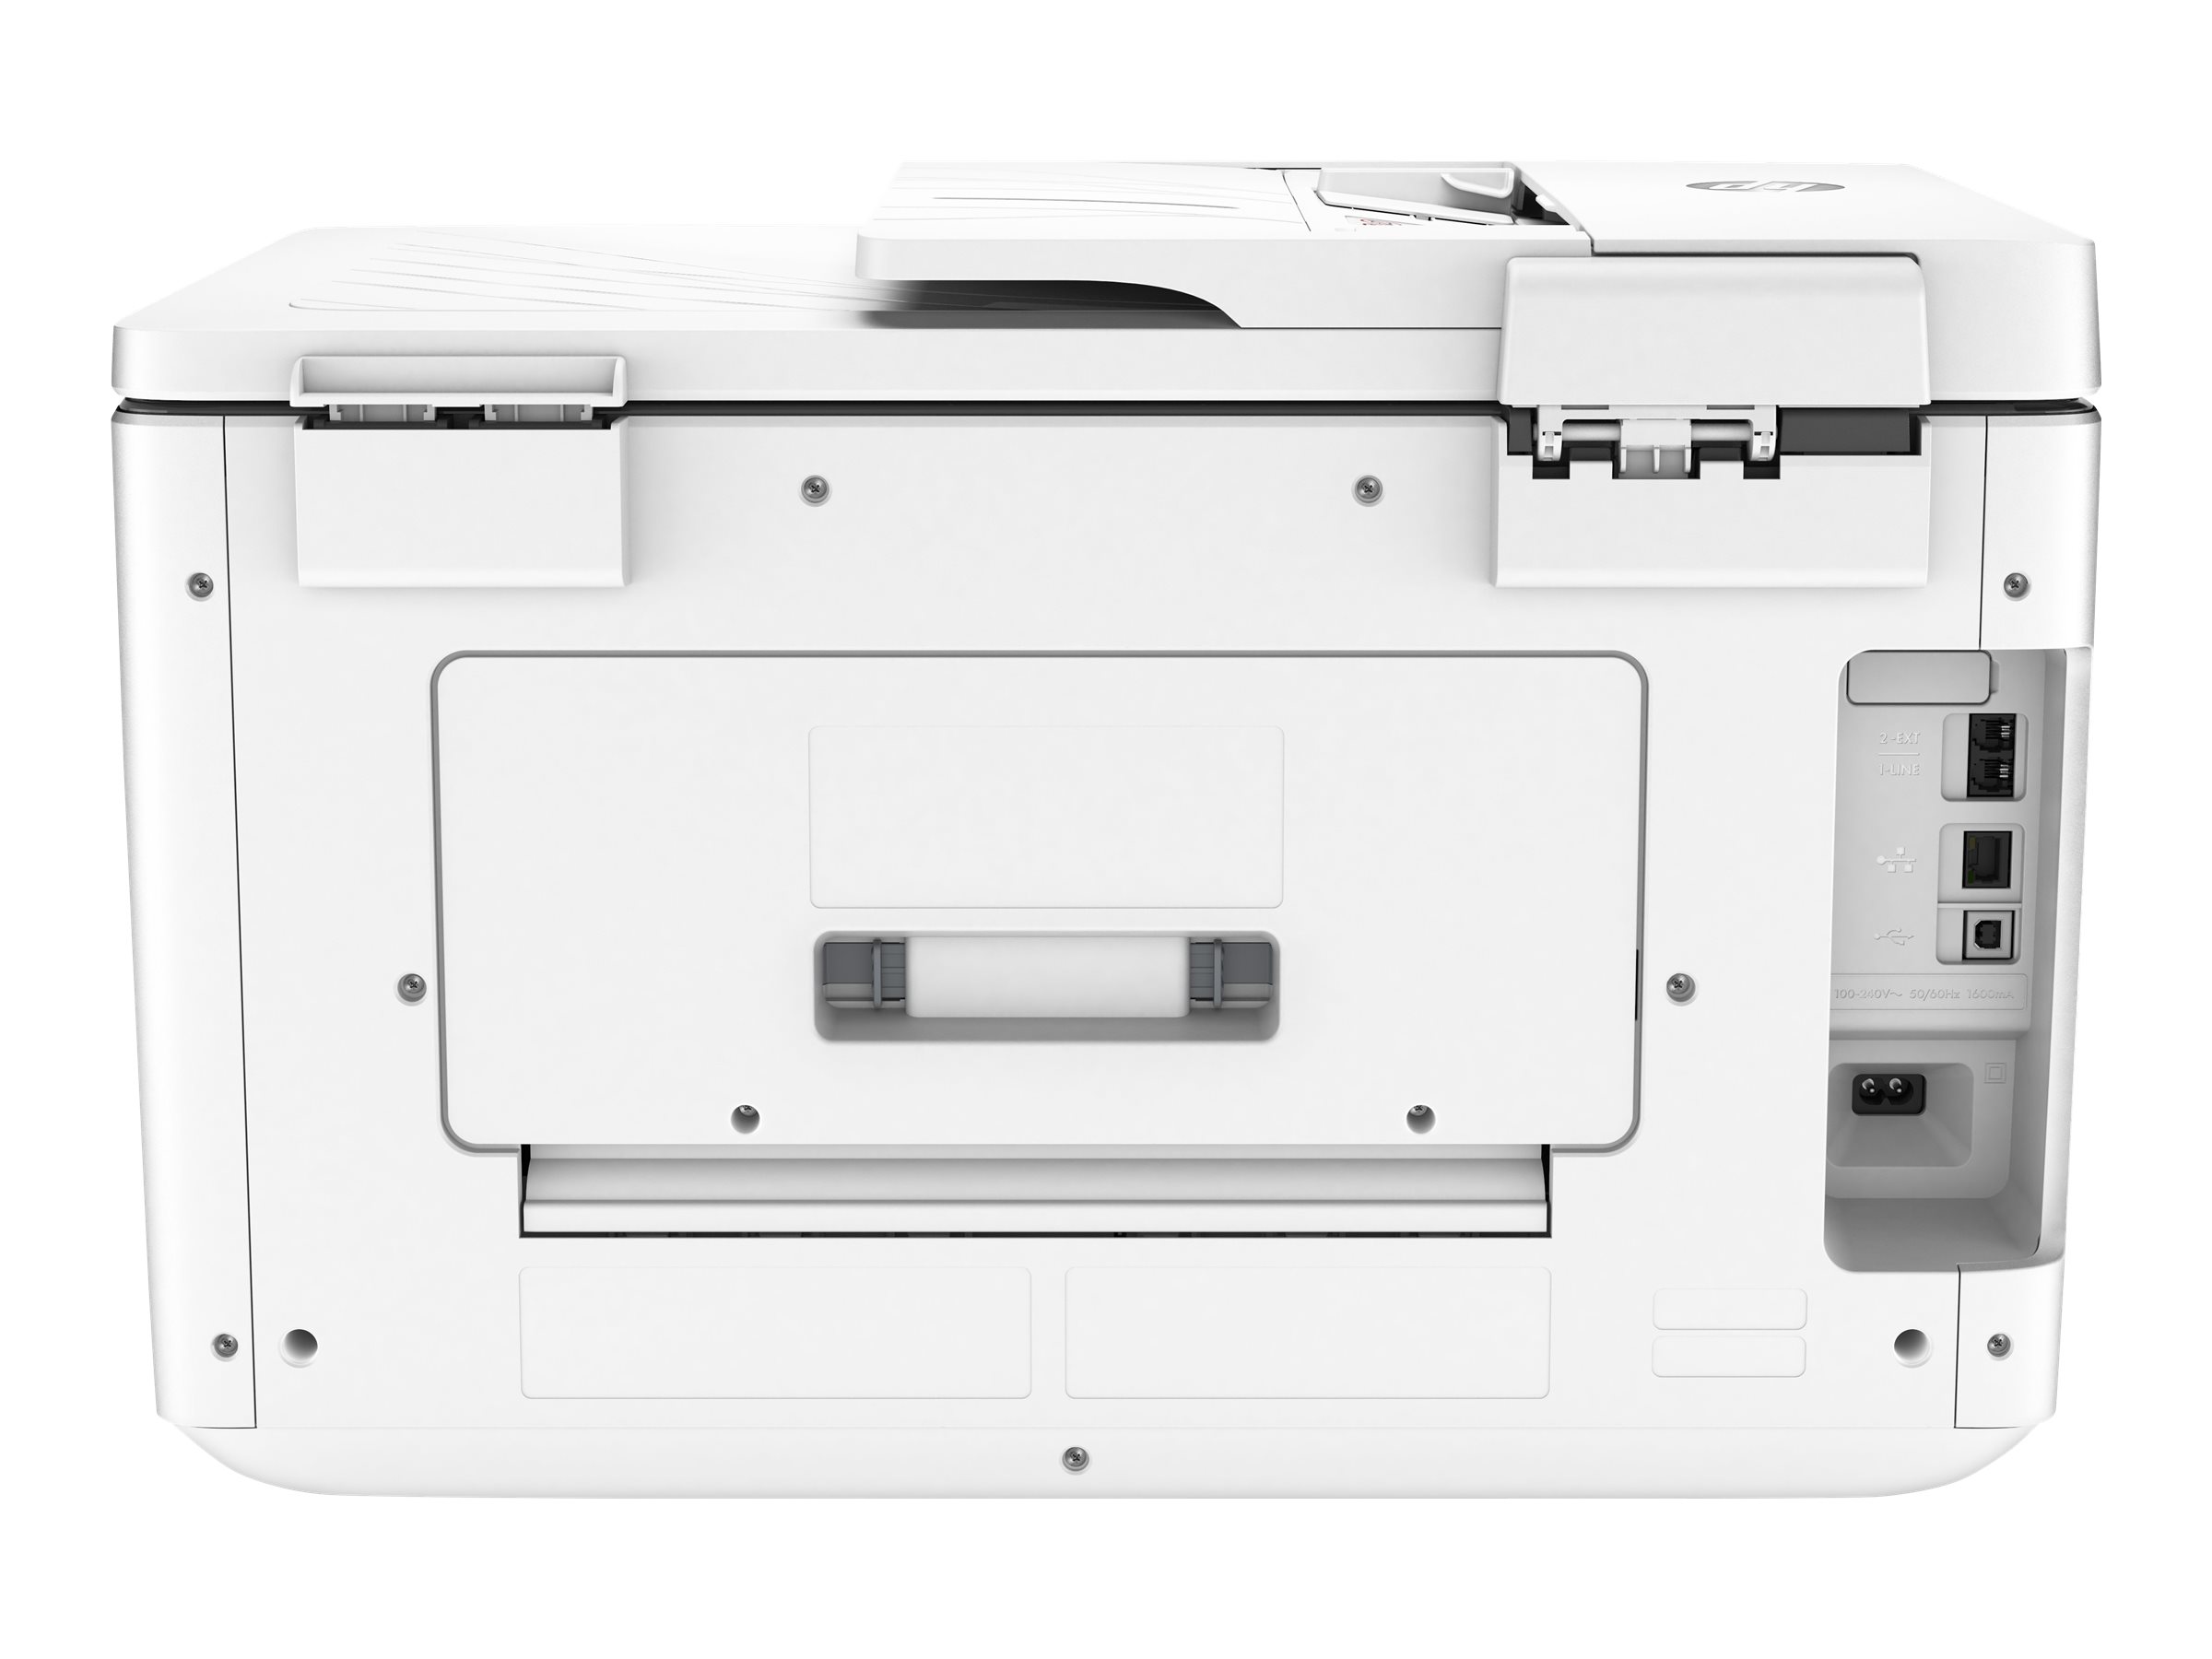 HP OfficeJet Pro 7740 A3-Multifunktionsdrucker 4-in-1 (DIN A3, Drucker, Scanner, Kopierer, Fax, WLAN, Duplex..)